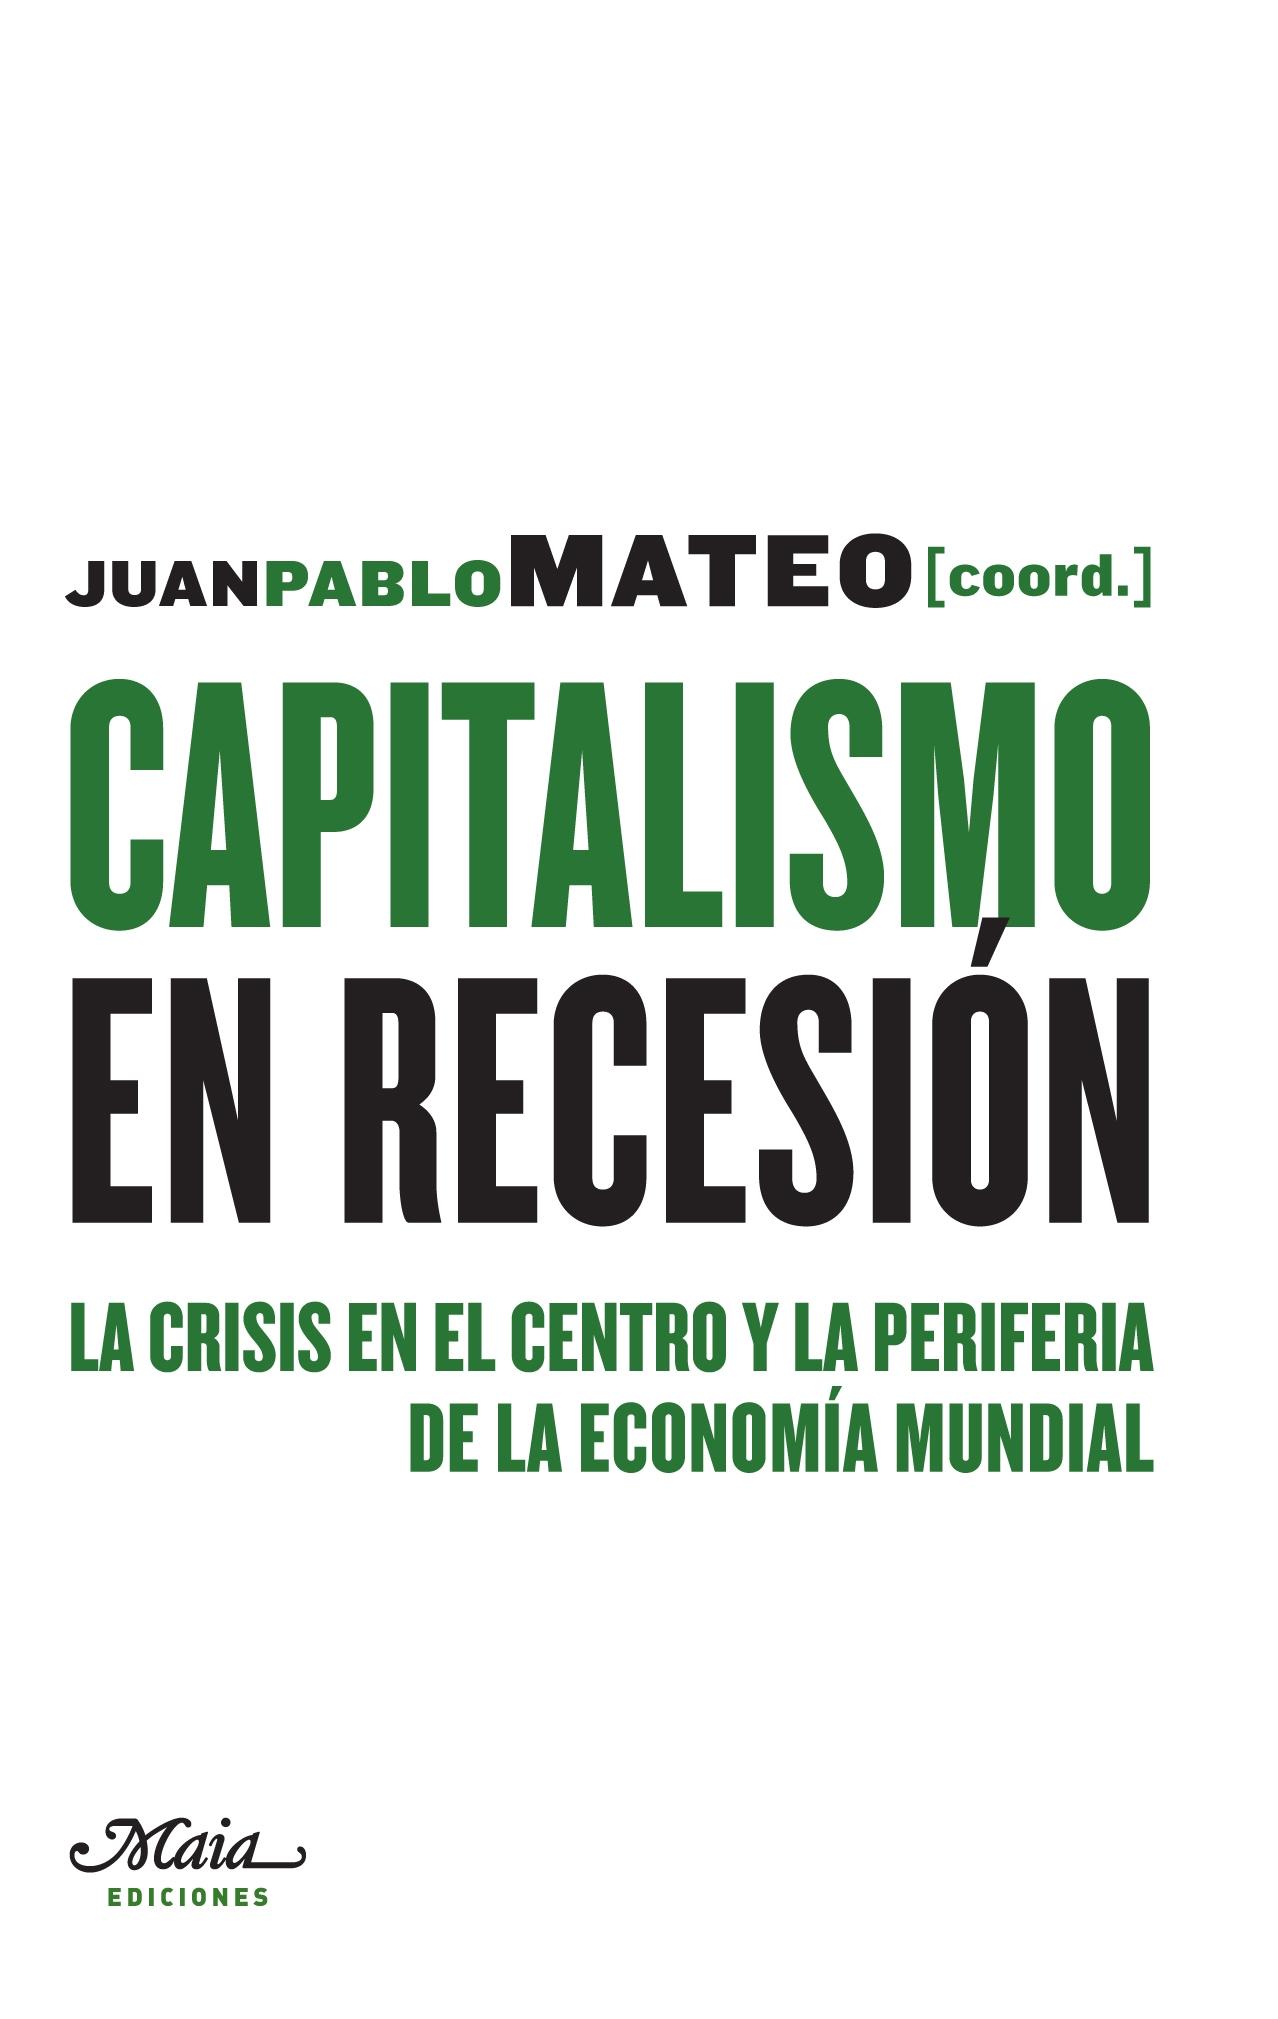 Capitalismo en recesión "La crisis en el centro y la periferia de la economía mundial"